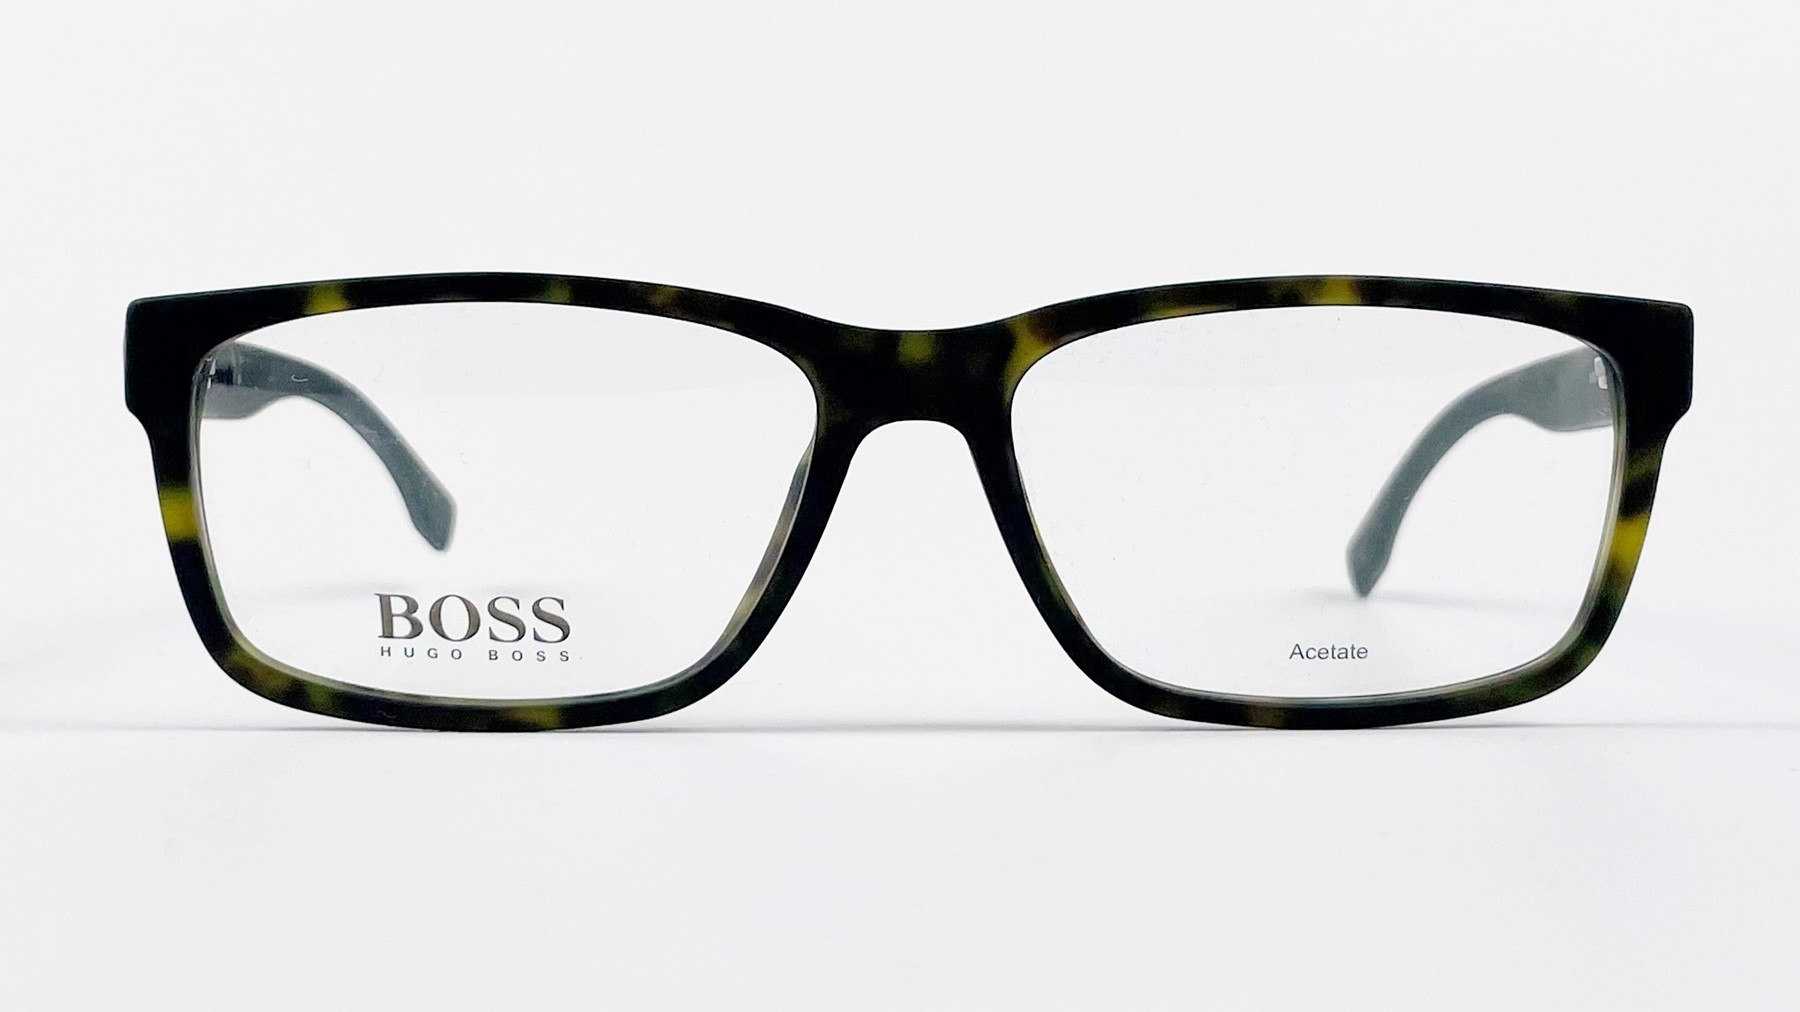 HUGO BOSS 0836 HXF, Korean glasses, sunglasses, eyeglasses, glasses